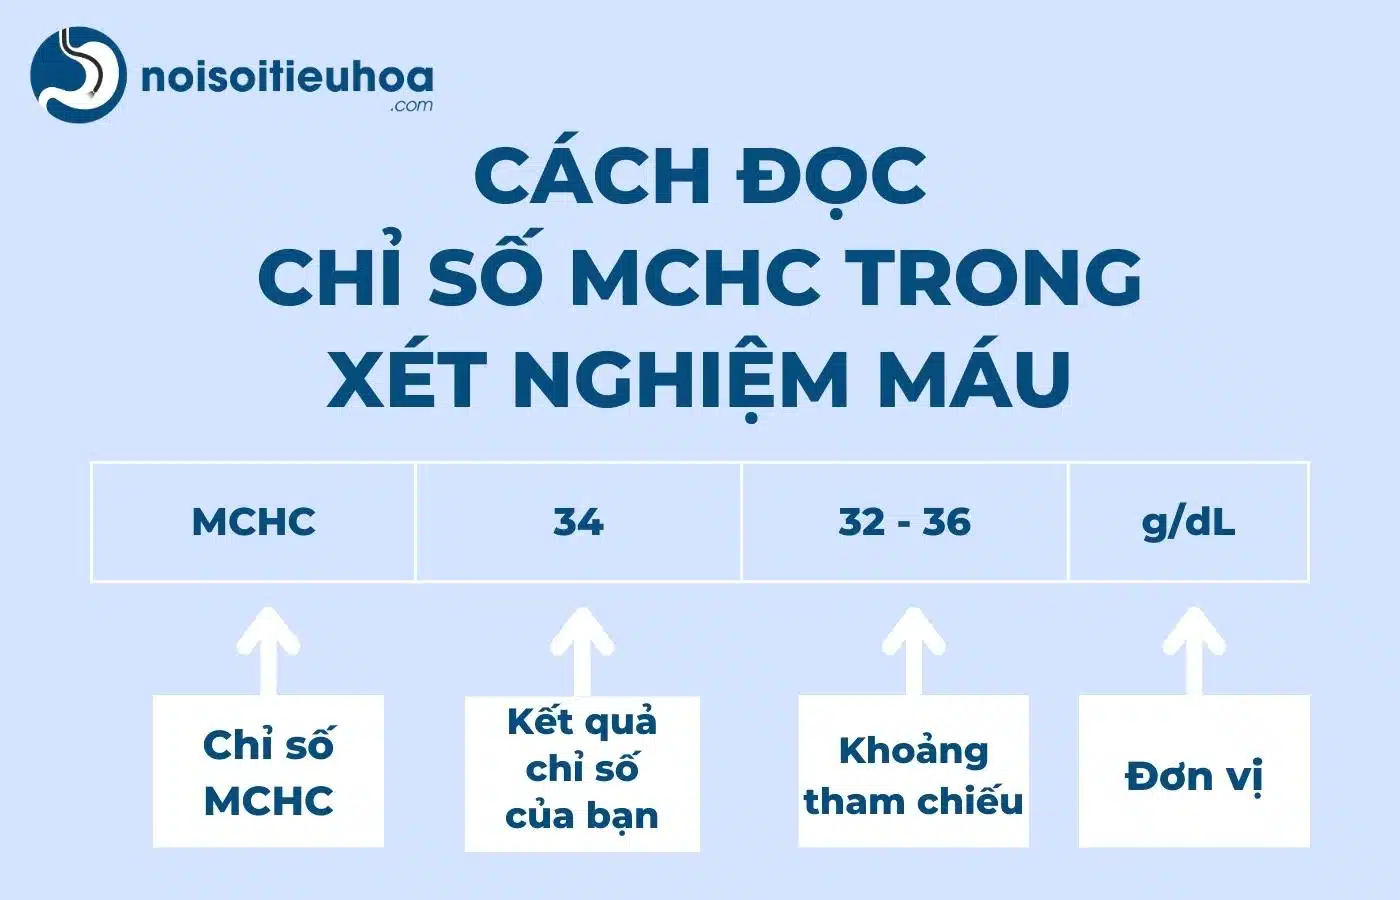 Cách đọc chỉ số MCHC trong xét nghiệm công thức máu như thế nào